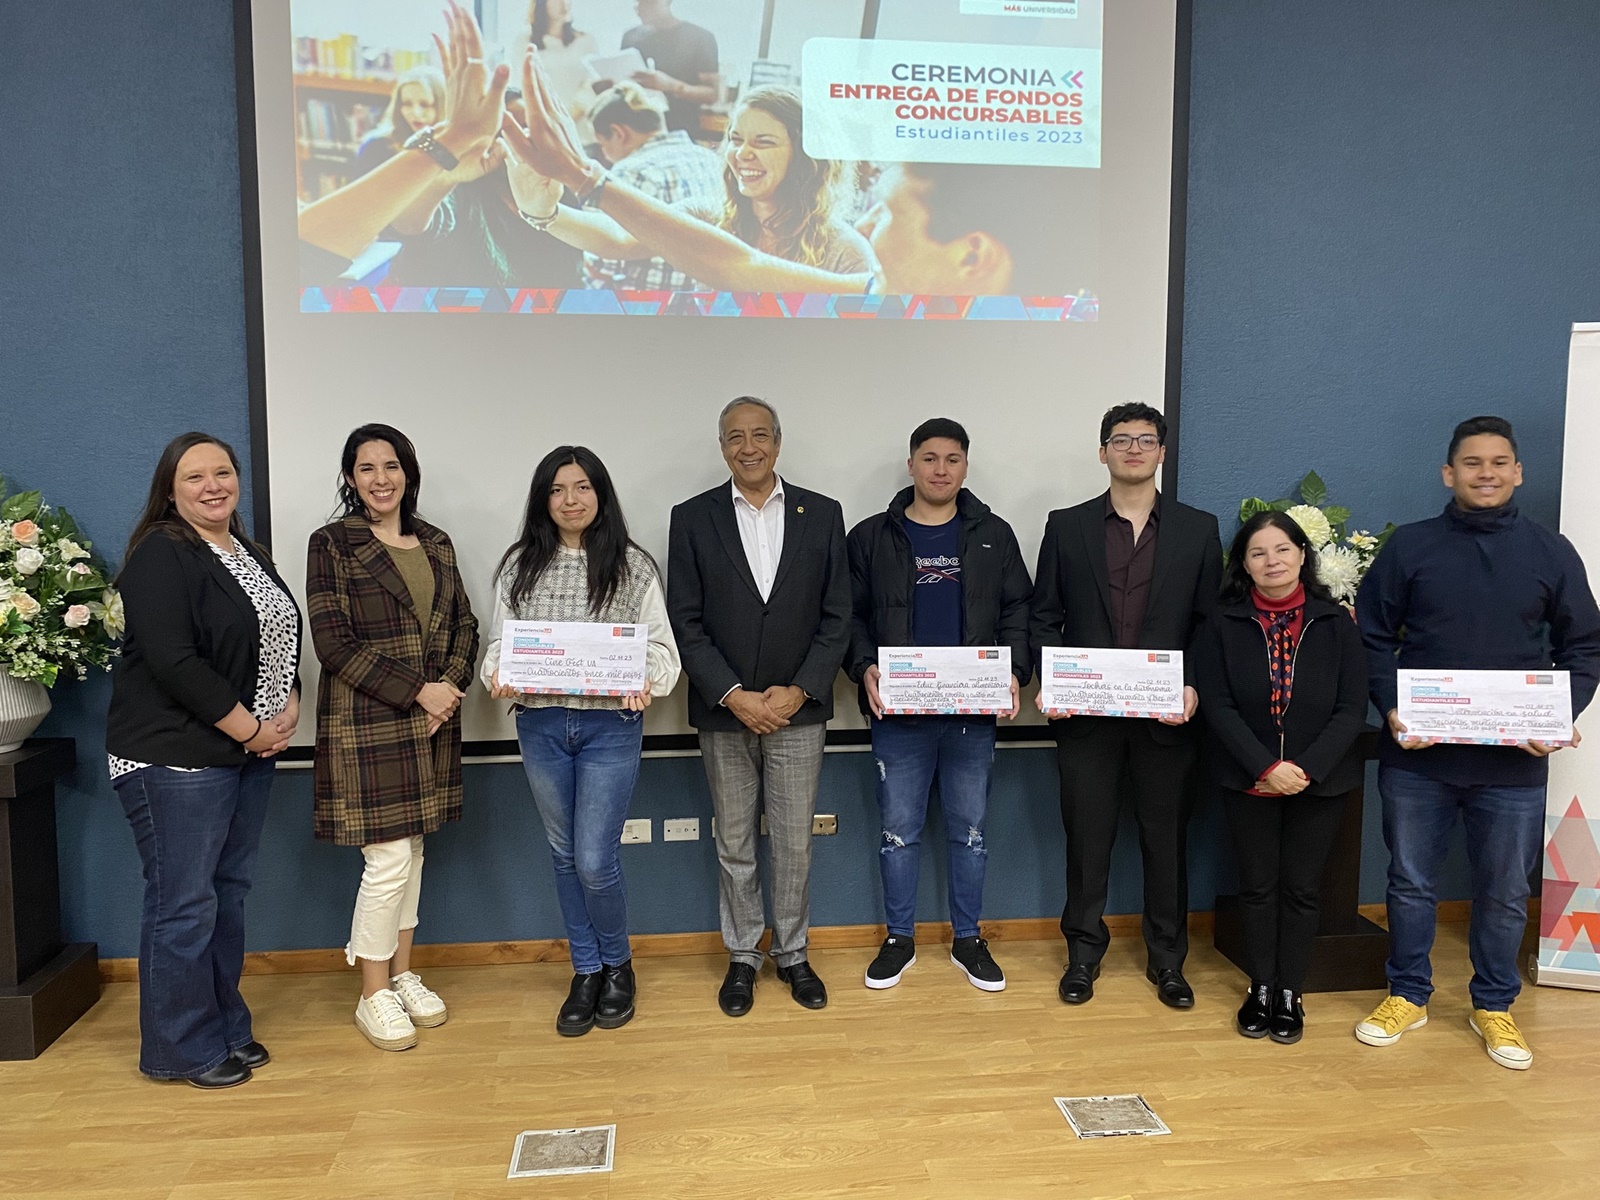 Universidad Autónoma premia a estudiantes destacados en la Ceremonia de Entrega de Fondos Concursables Estudiantiles 2023